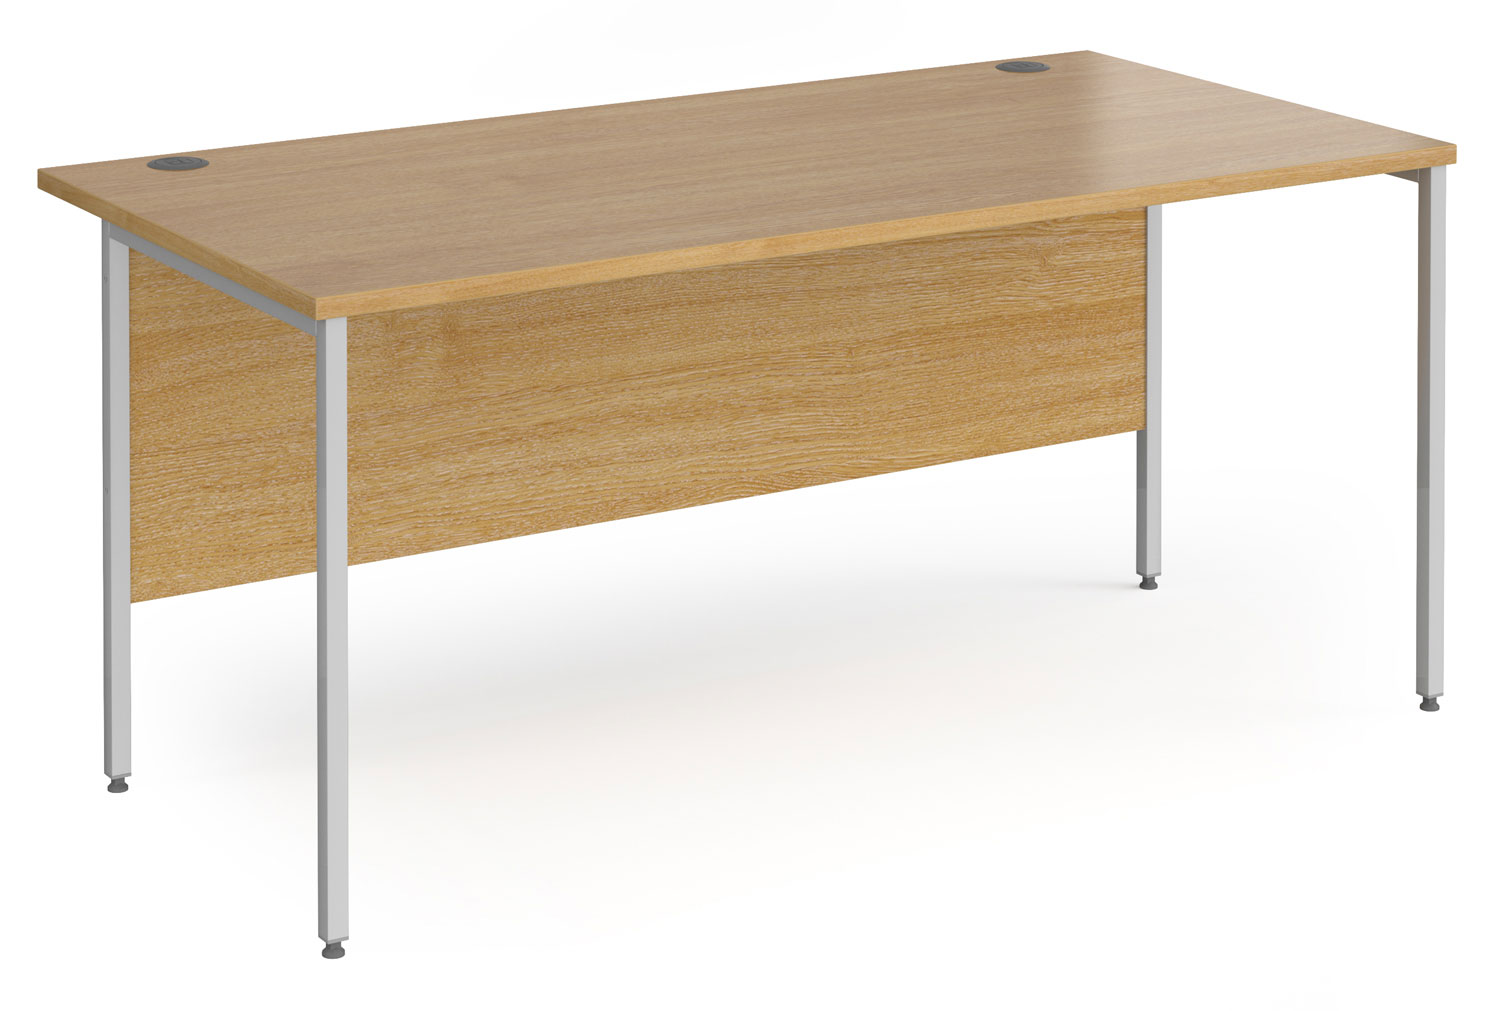 Value Line Classic+ Rectangular H-Leg Office Desk (Silver Leg), 160wx80dx73h (cm), Oak, Express Delivery